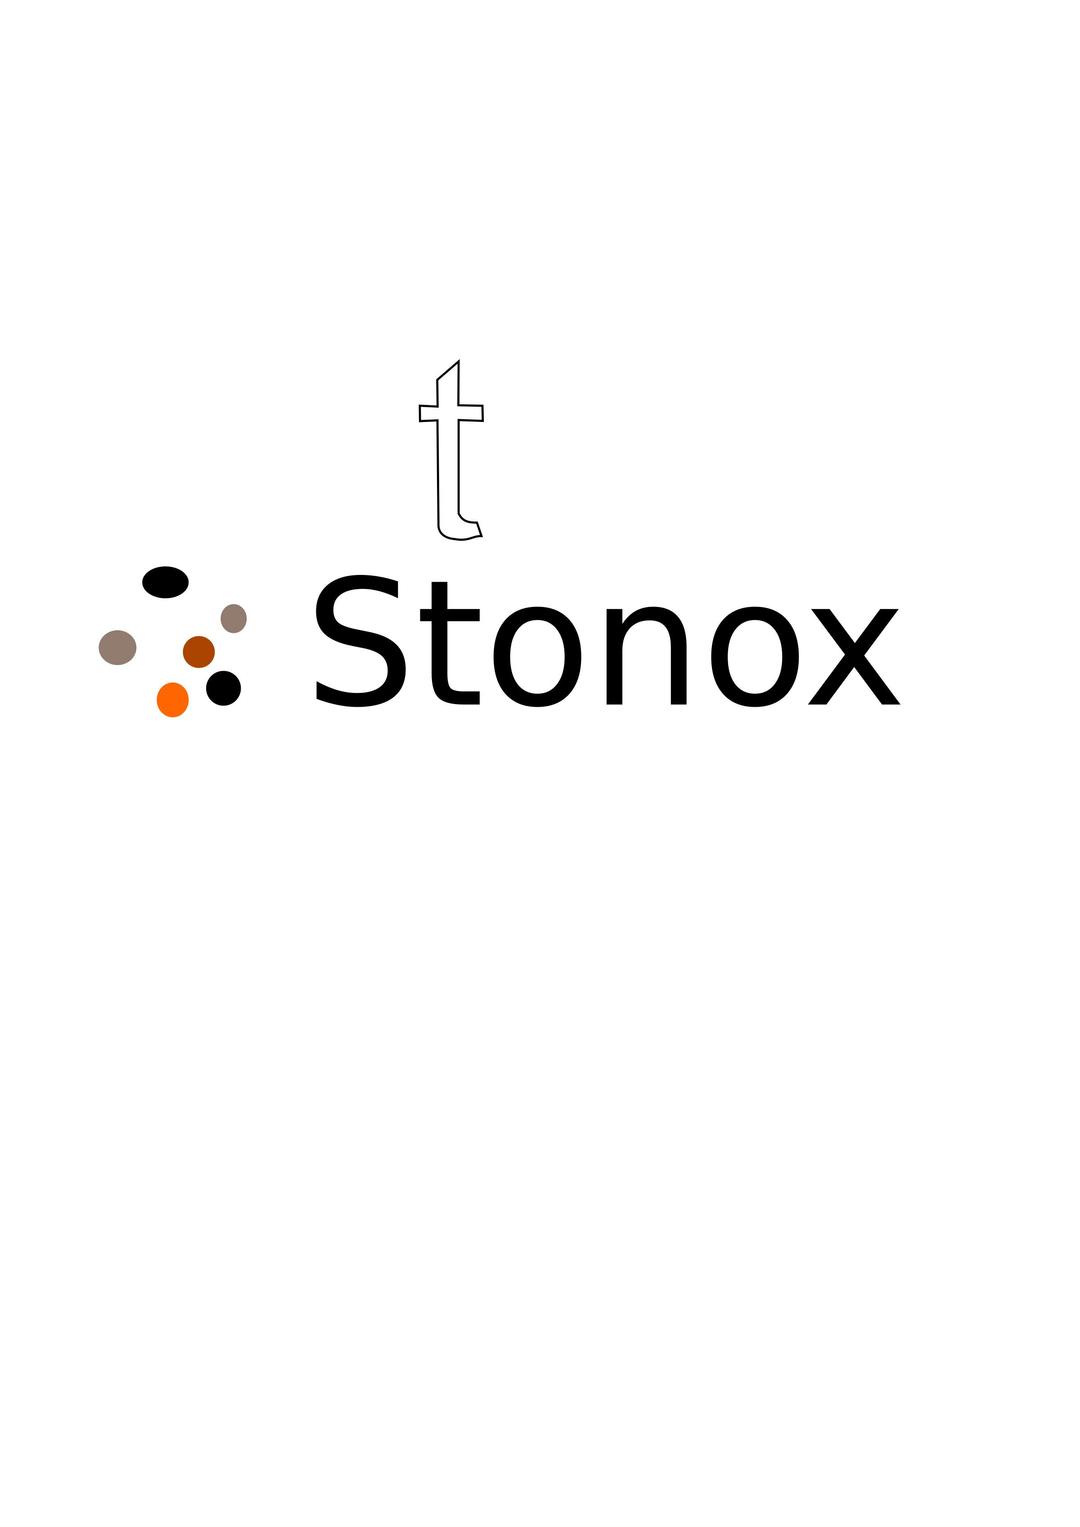 Logo de stonox png transparent